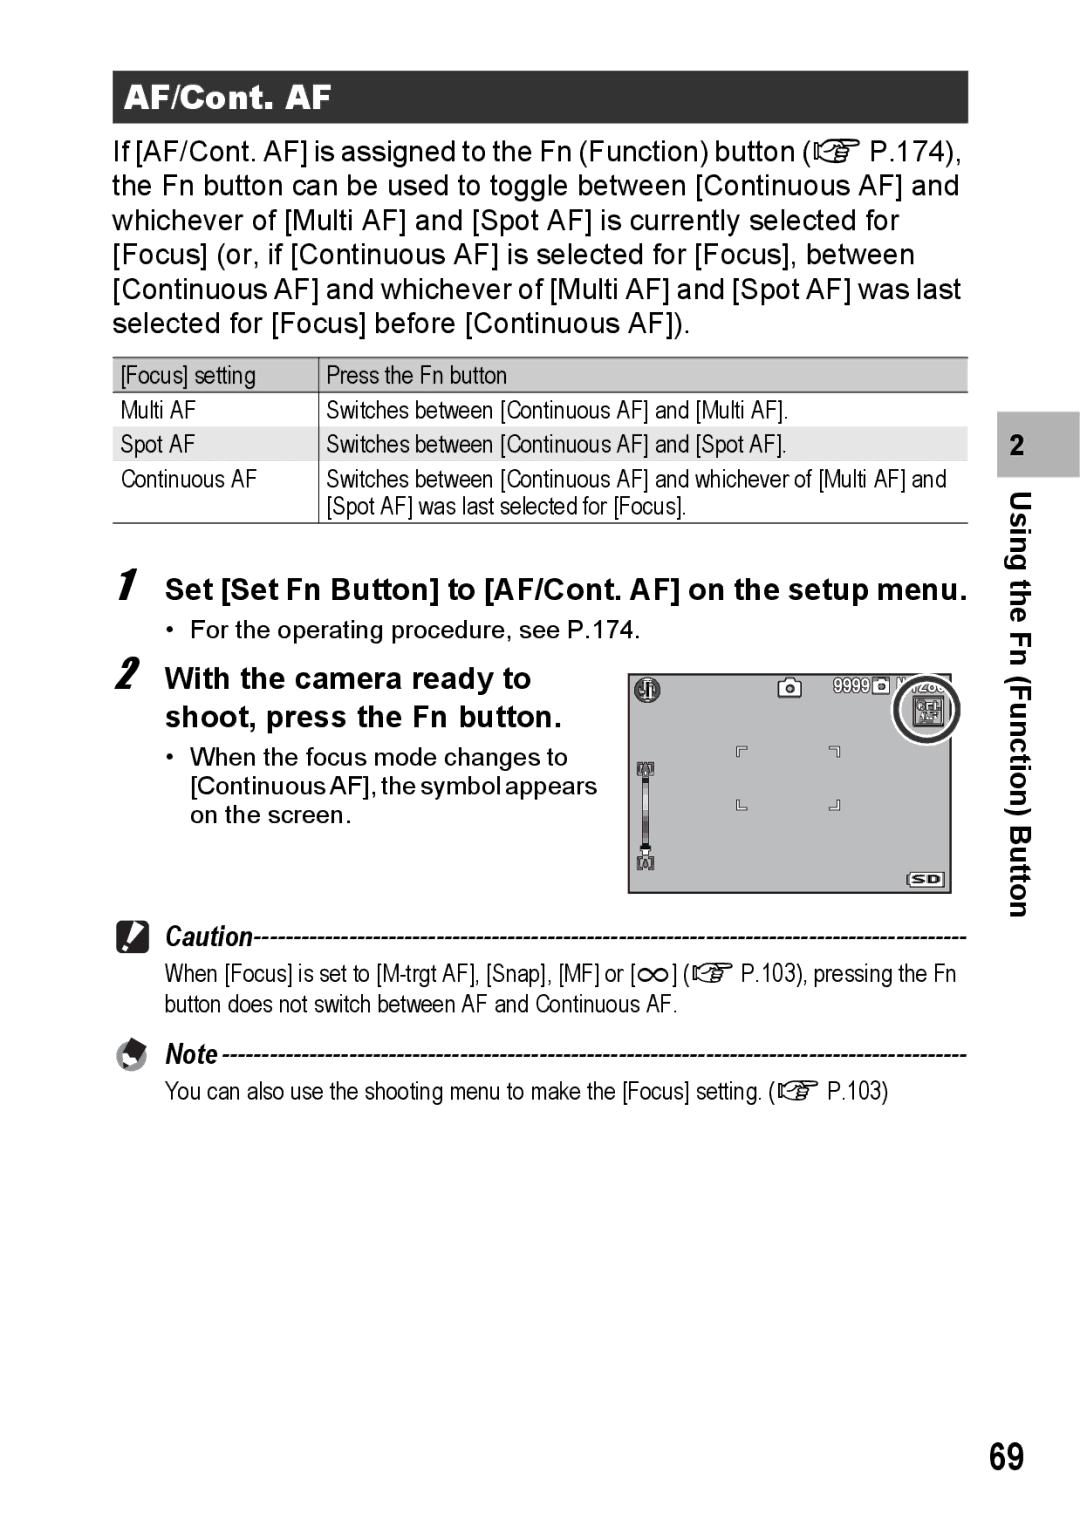 Samsung CX2 manual Set Set Fn Button to AF/Cont. AF on the setup menu 